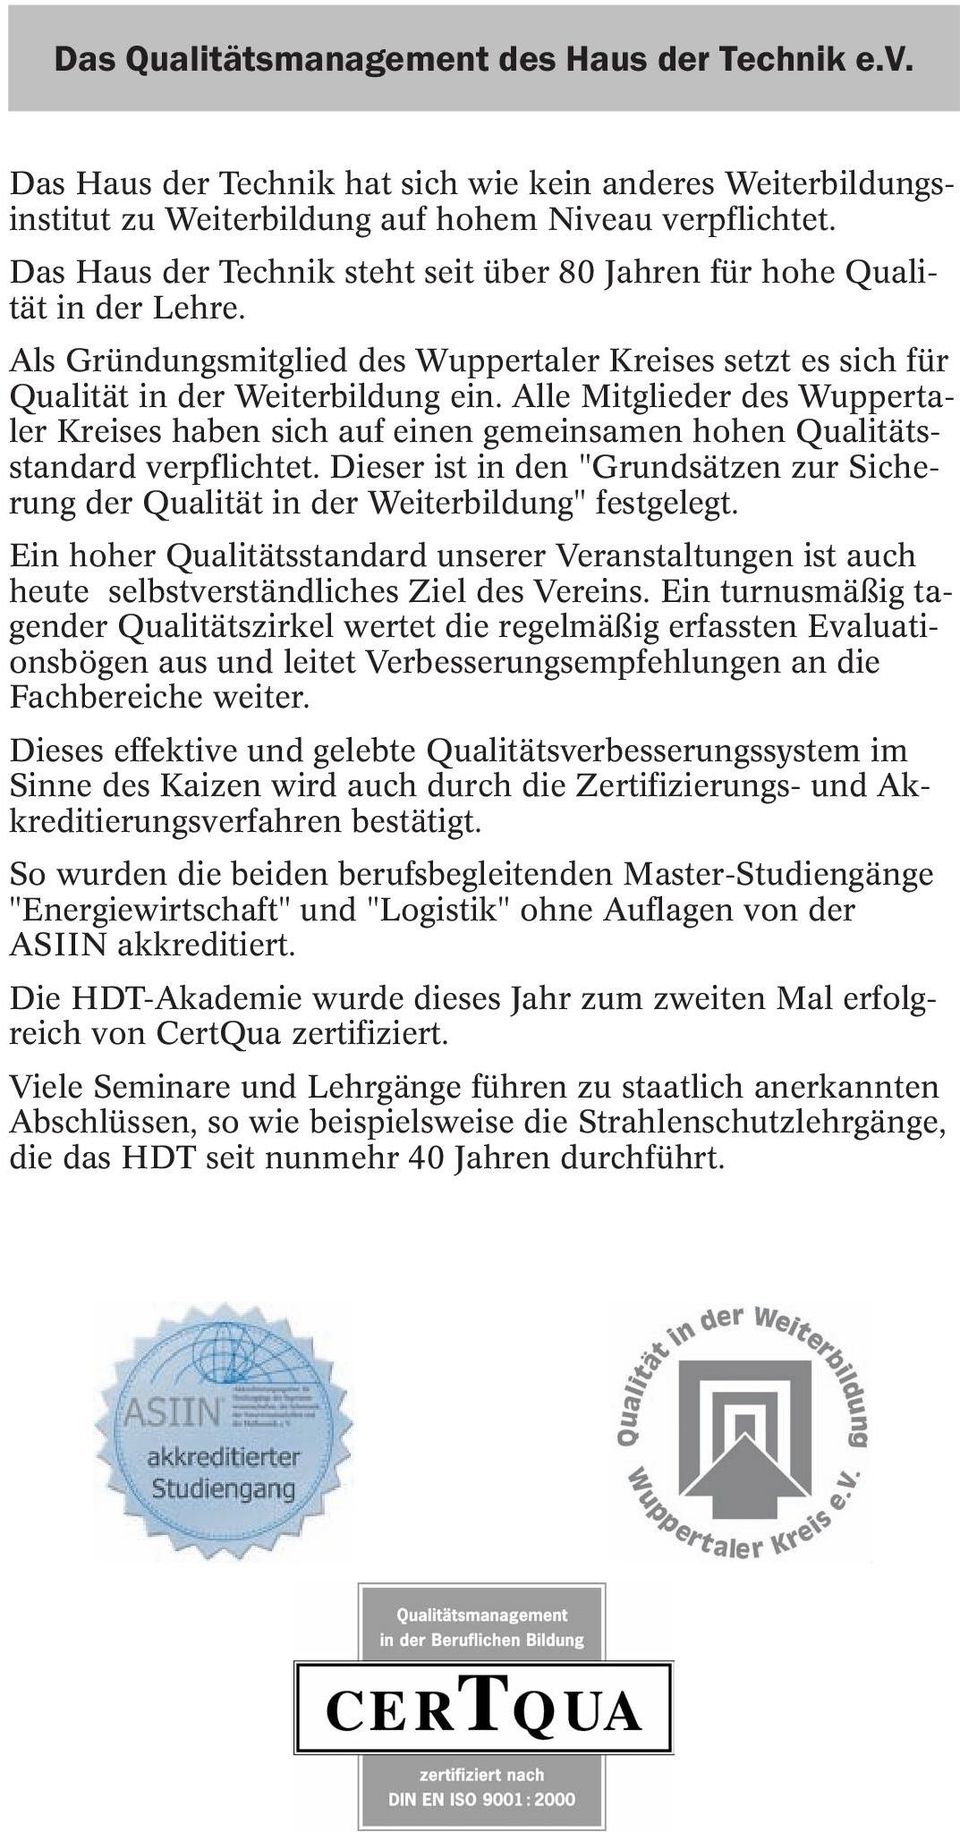 Alle Mitglieder des Wuppertaler Kreises haben sich auf einen gemeinsamen hohen Qualitätsstandard verpflichtet.